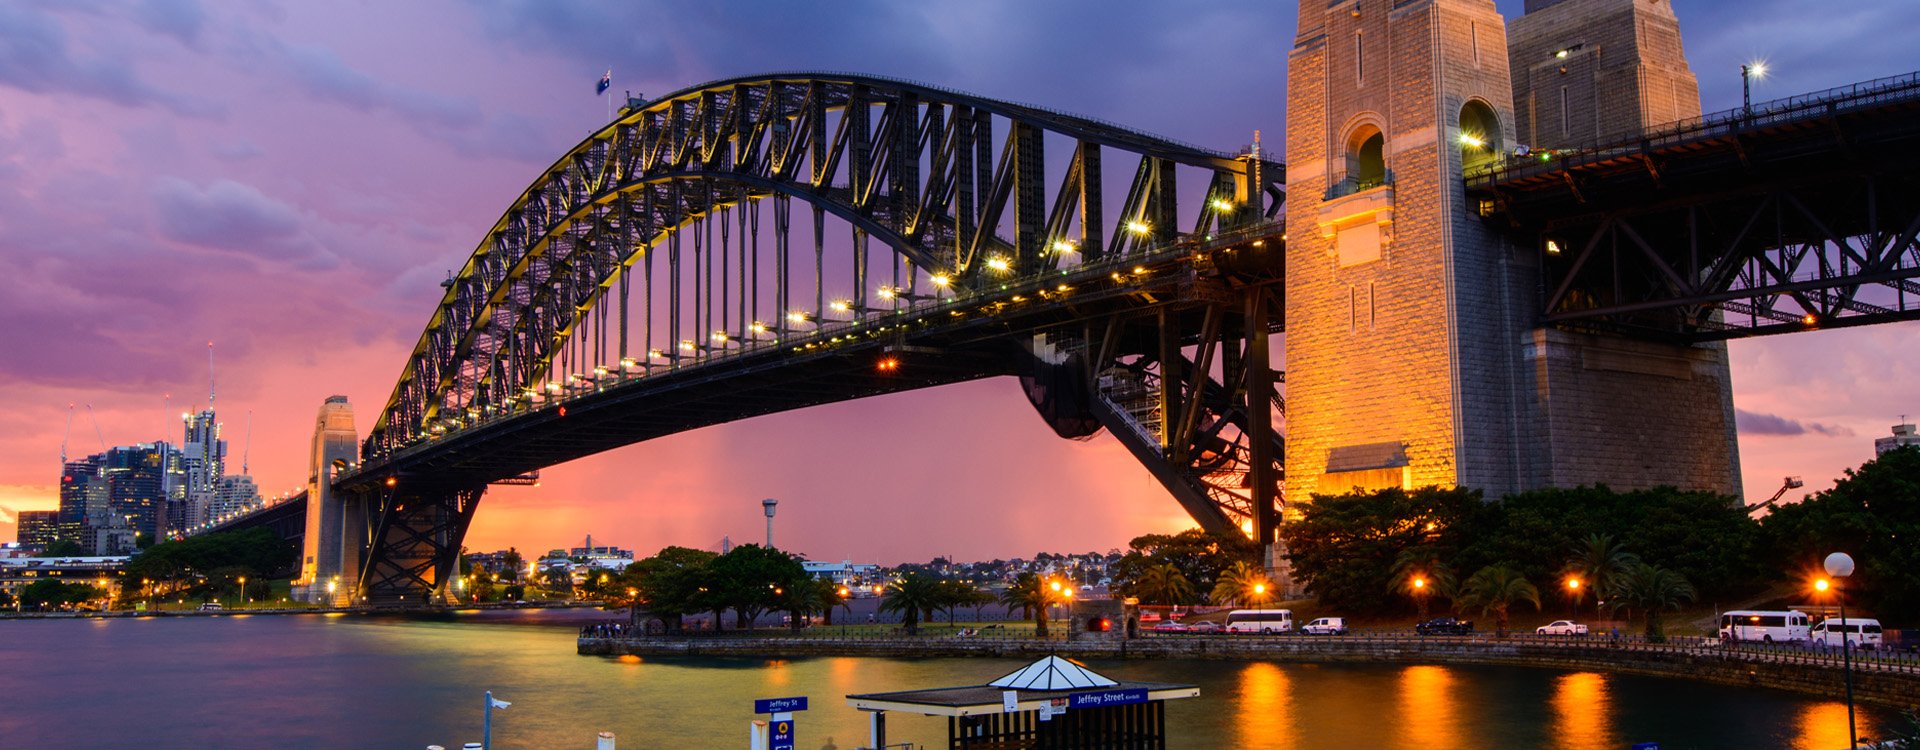 Harbour bridge in Sydney Australia at sundown